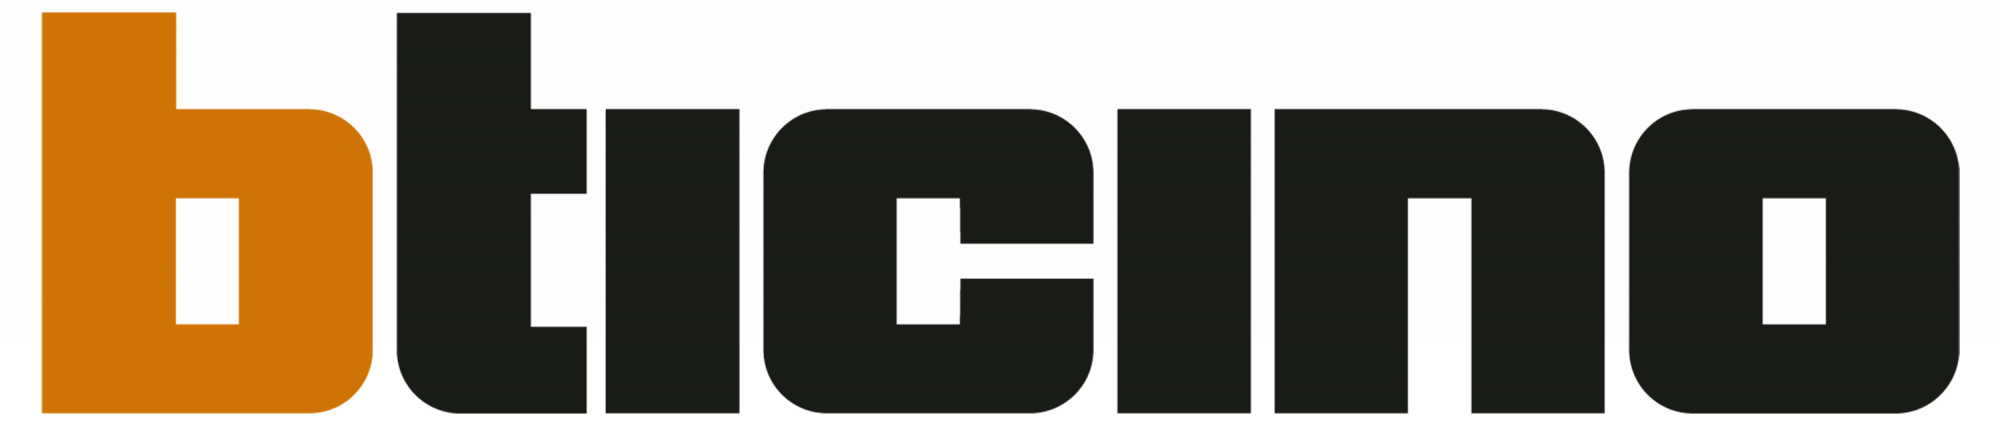 Логотип производителя Bticino